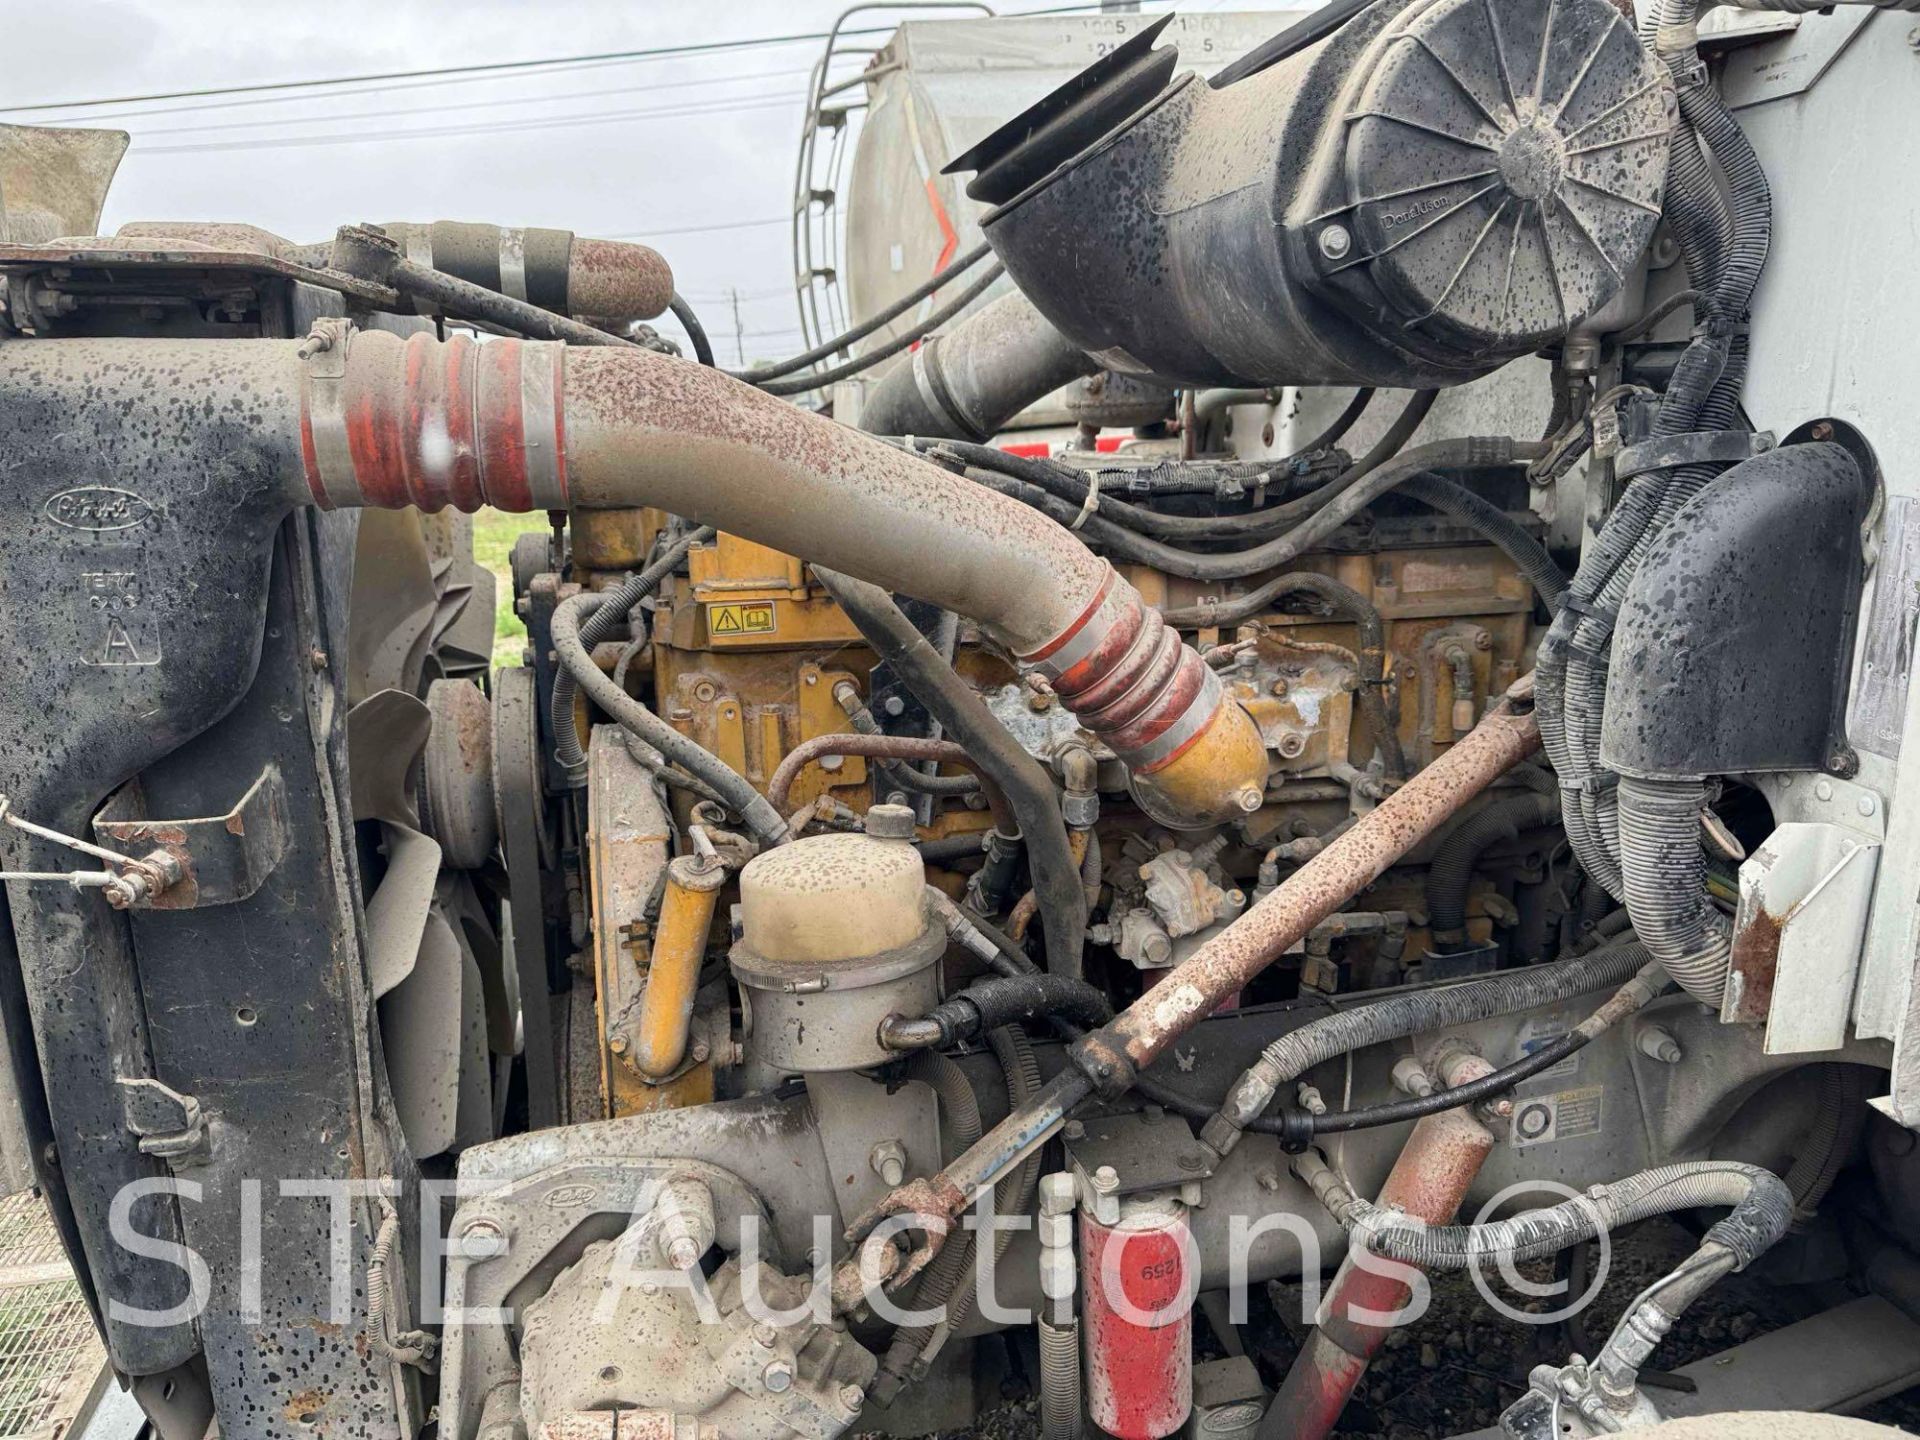 2004 Peterbilt 385 T/A Fuel Truck - Image 12 of 34